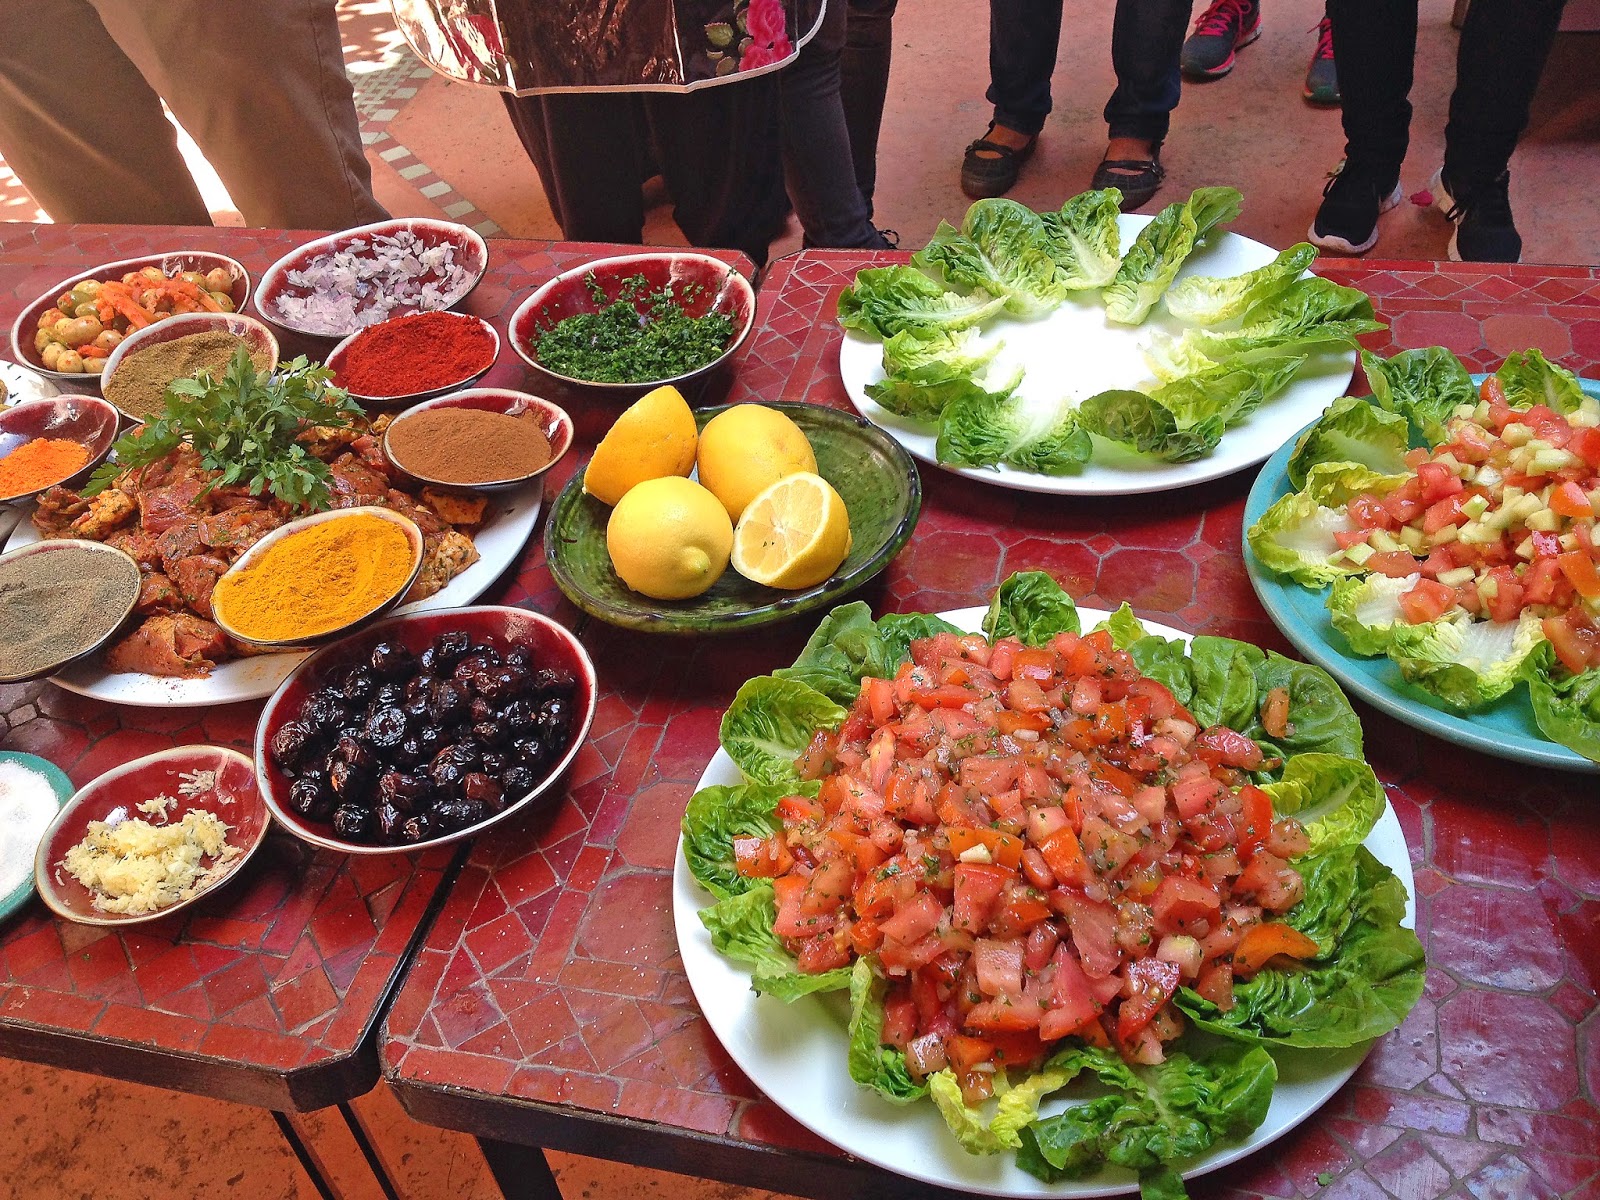 Du får rikelig med påfyll av bpde mat og kunnskap på et matkurs i Marrakesh